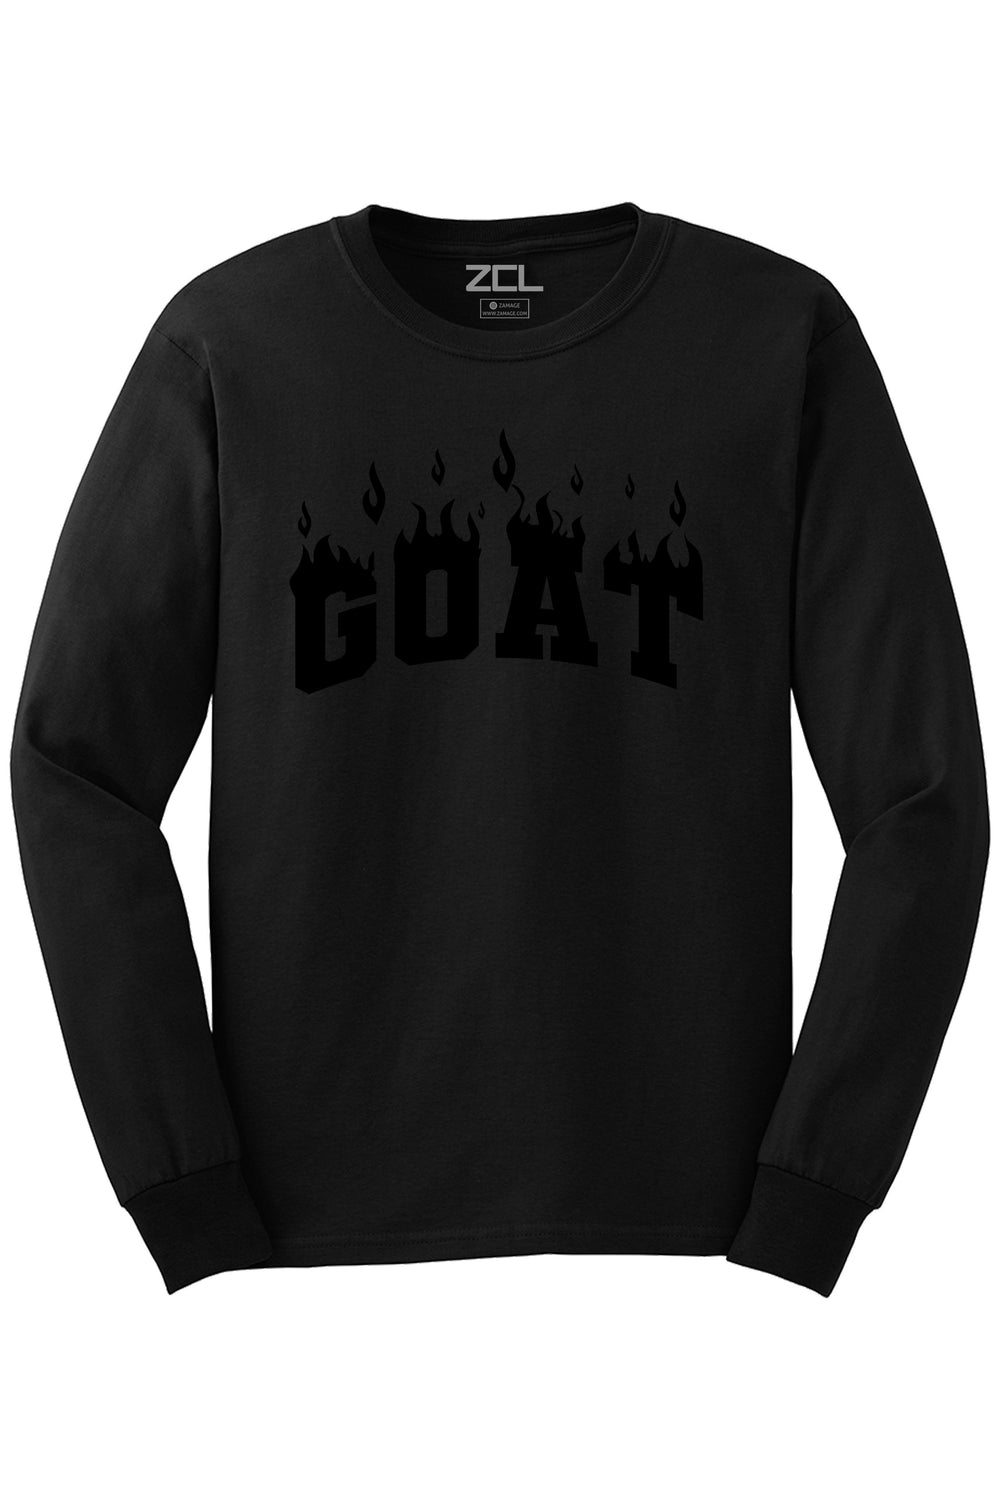 Goat Flame Long Sleeve Tee (Black Logo) - Zamage